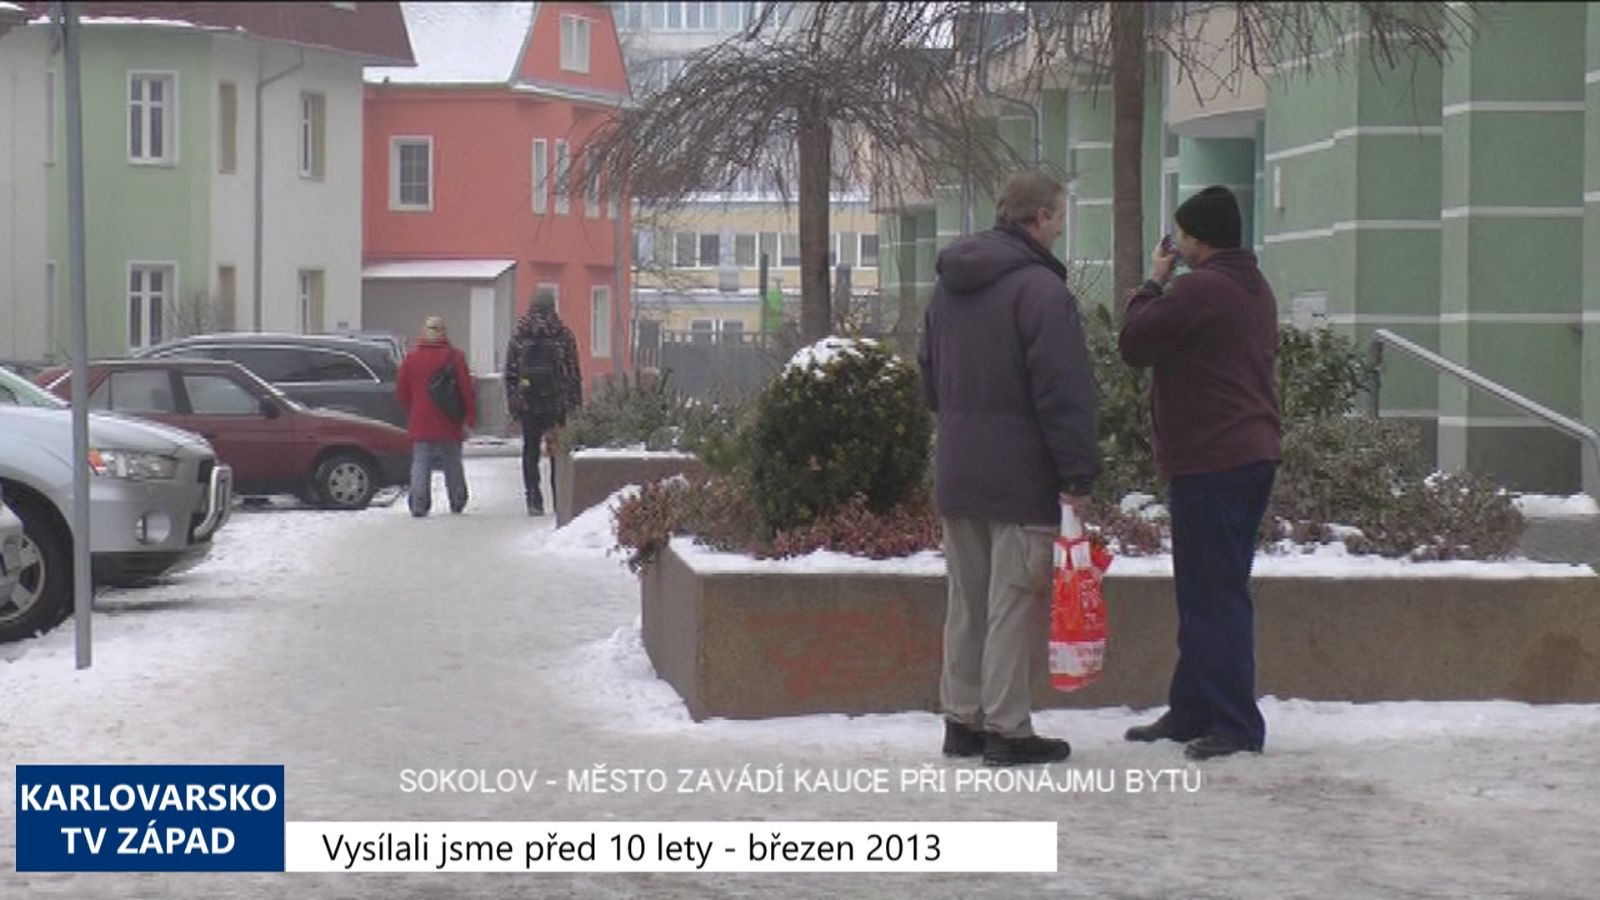 2013 – Sokolov: Město zavádí kauce při pronájmu bytů (4892) (TV Západ)